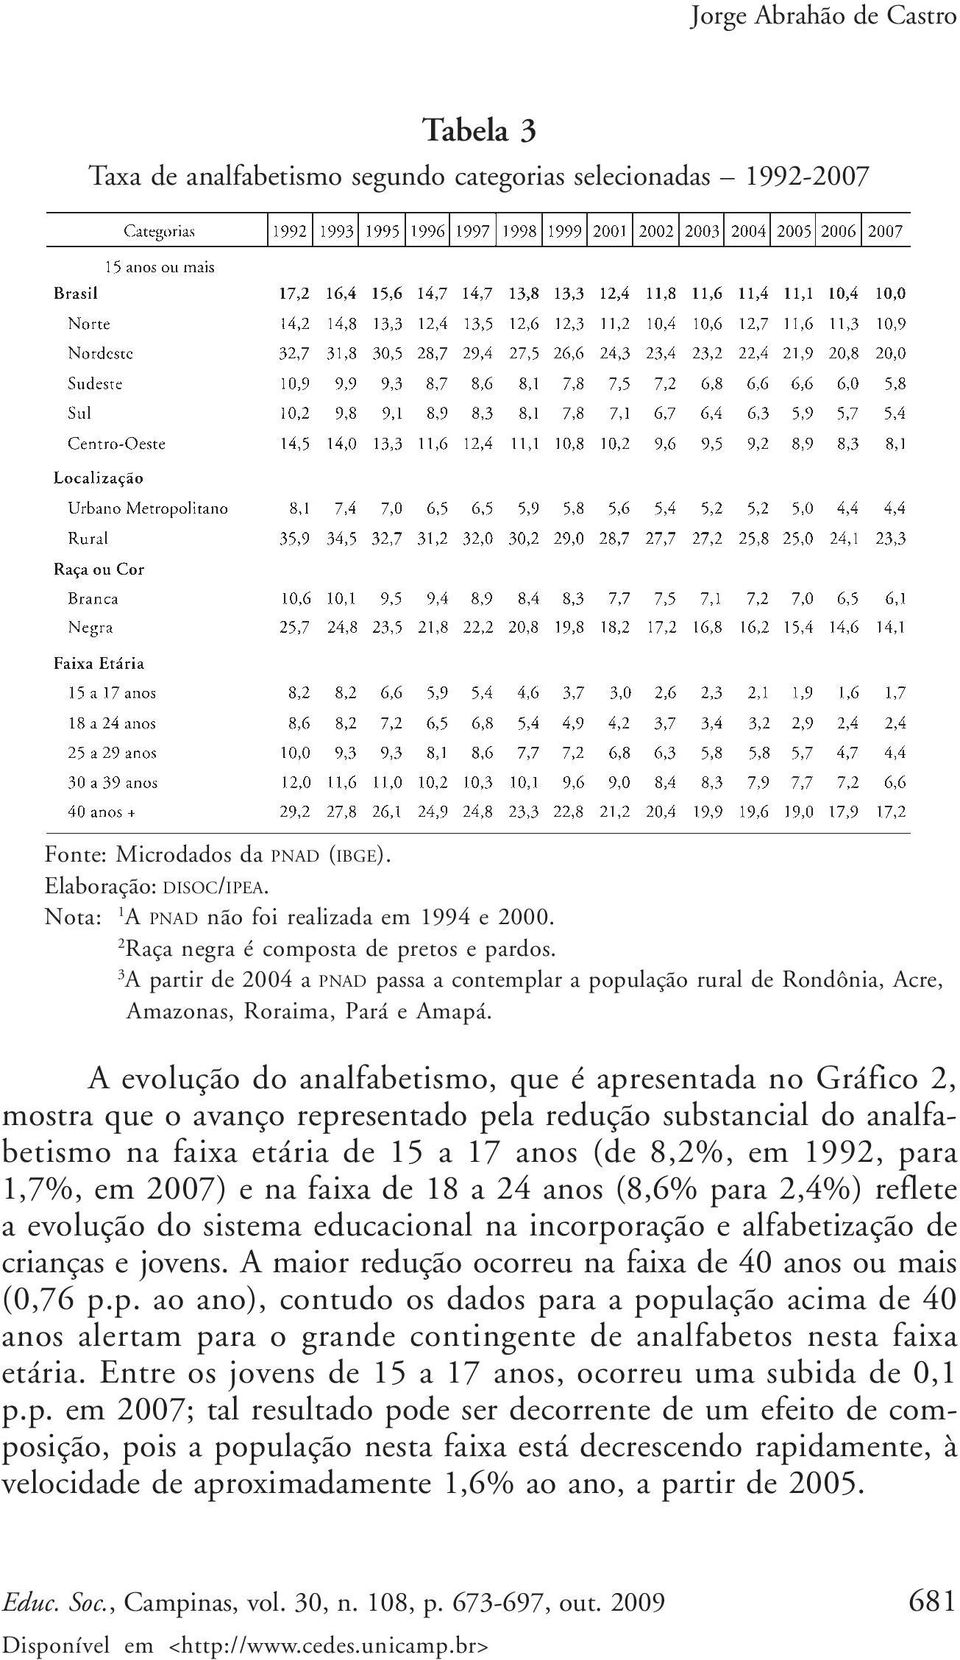 A evolução do analfabetismo, que é apresentada no Gráfico 2, mostra que o avanço representado pela redução substancial do analfabetismo na faixa etária de 15 a 17 anos (de 8,2%, em 1992, para 1,7%,